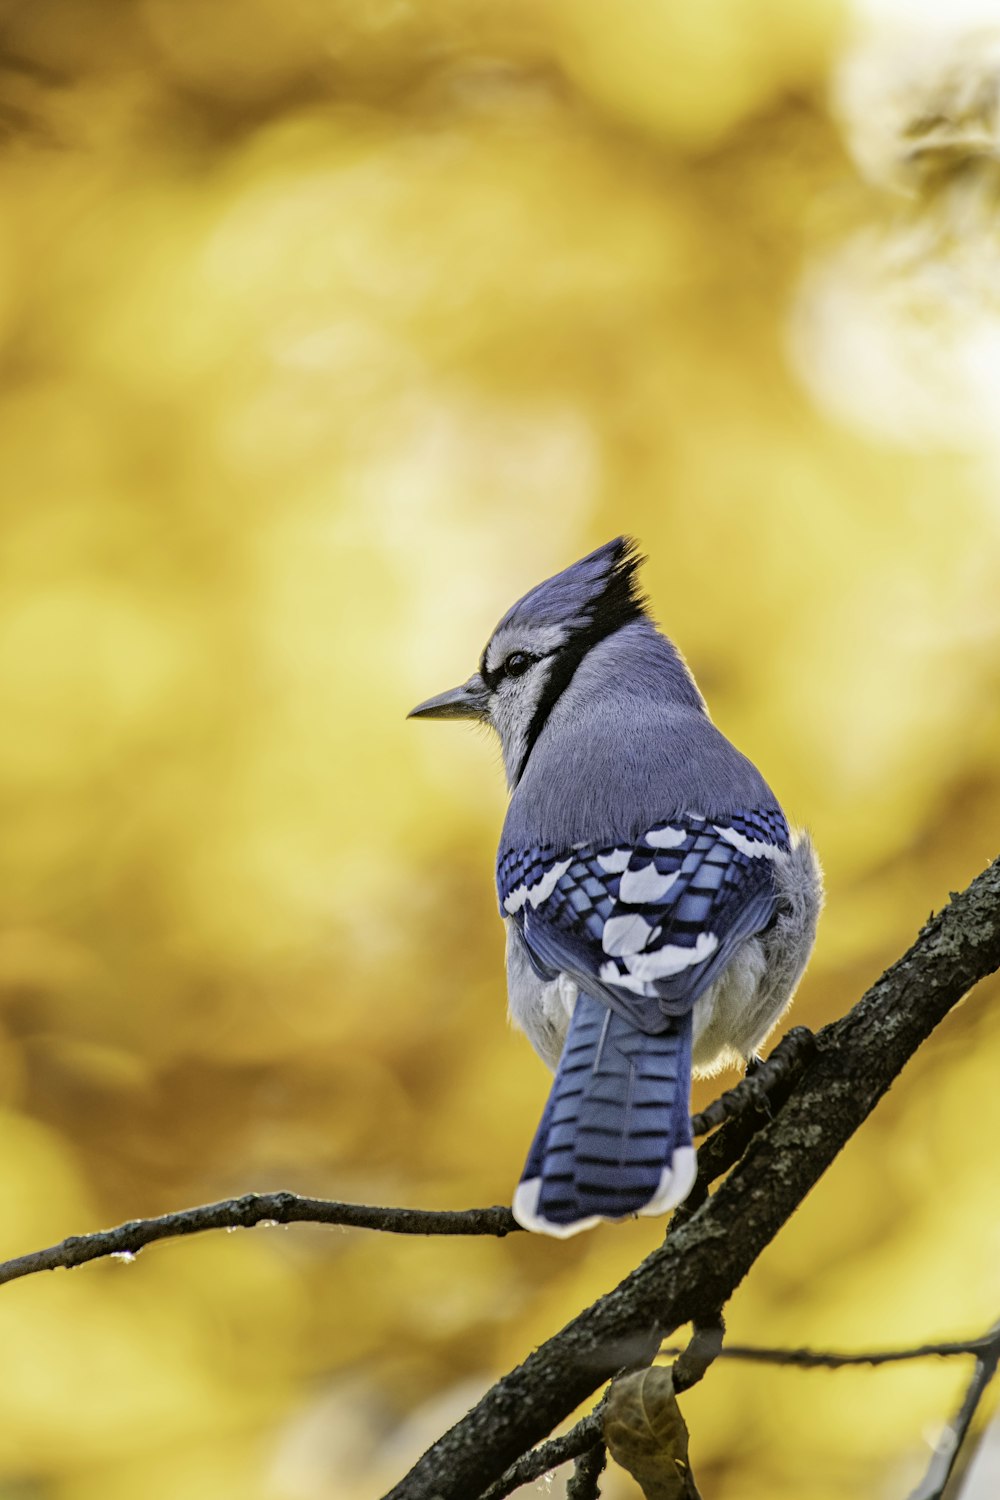 dolor de cabeza tengo sueño Nota Más de 20 imágenes de pájaros gratis en Unsplash